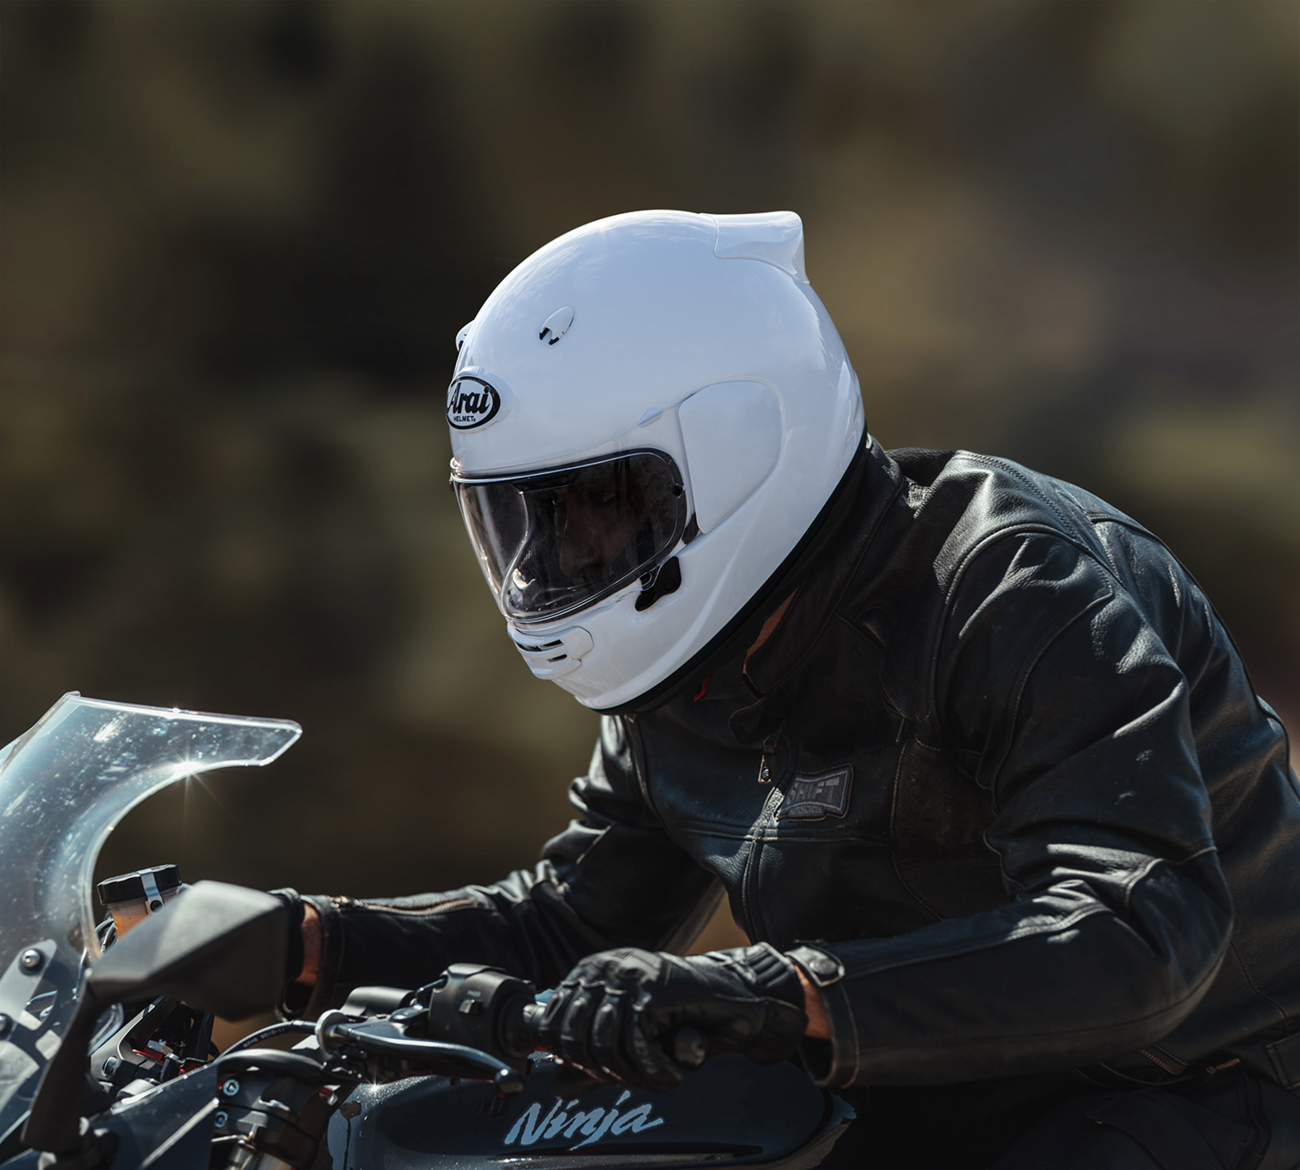 ARAI Contour-X Helmet - Solid - Diamond White - Medium 0101-16033